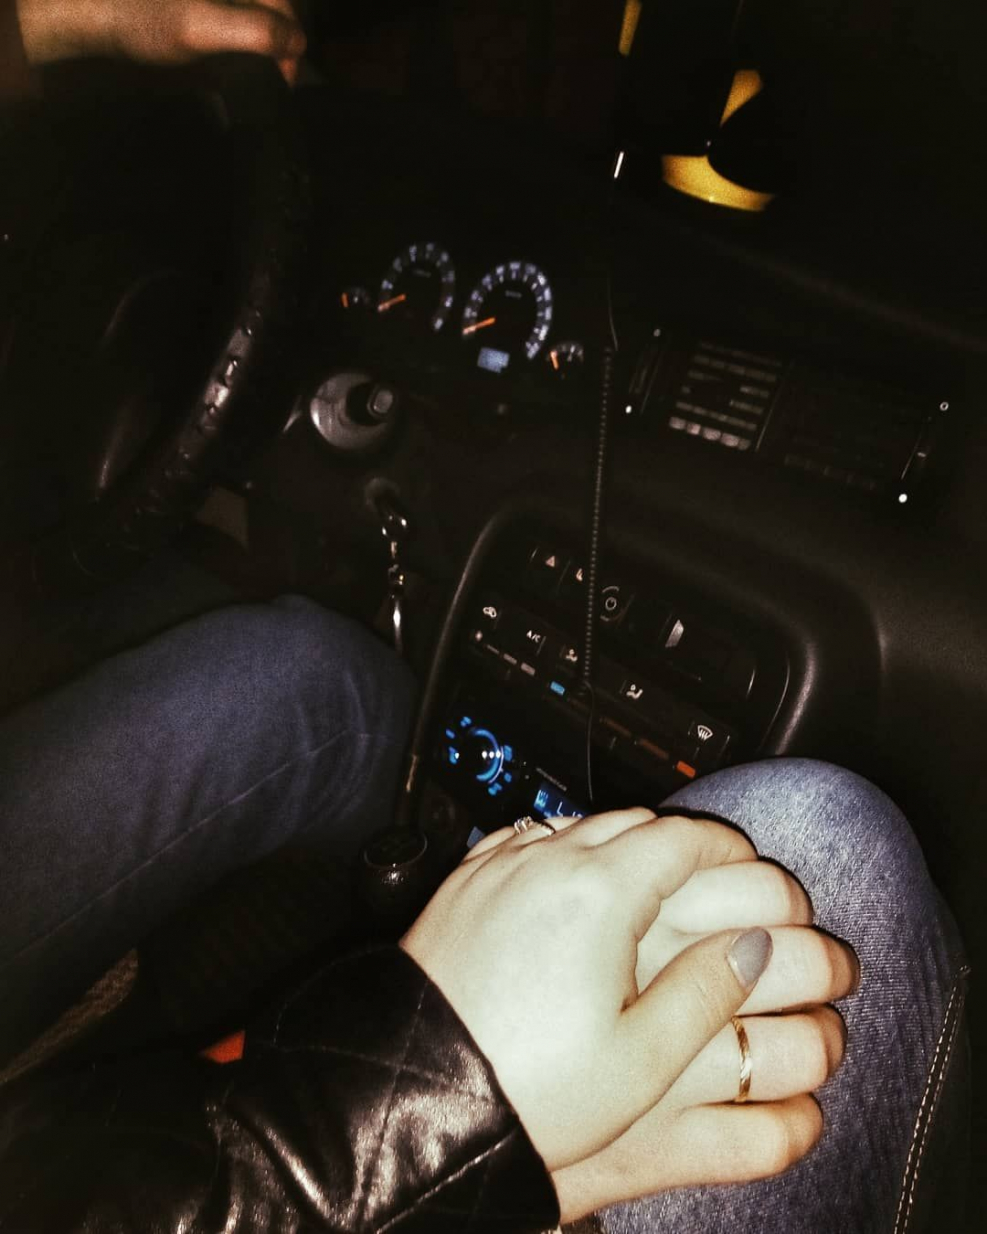 Фото с парнем в машине держаться за руки без лица